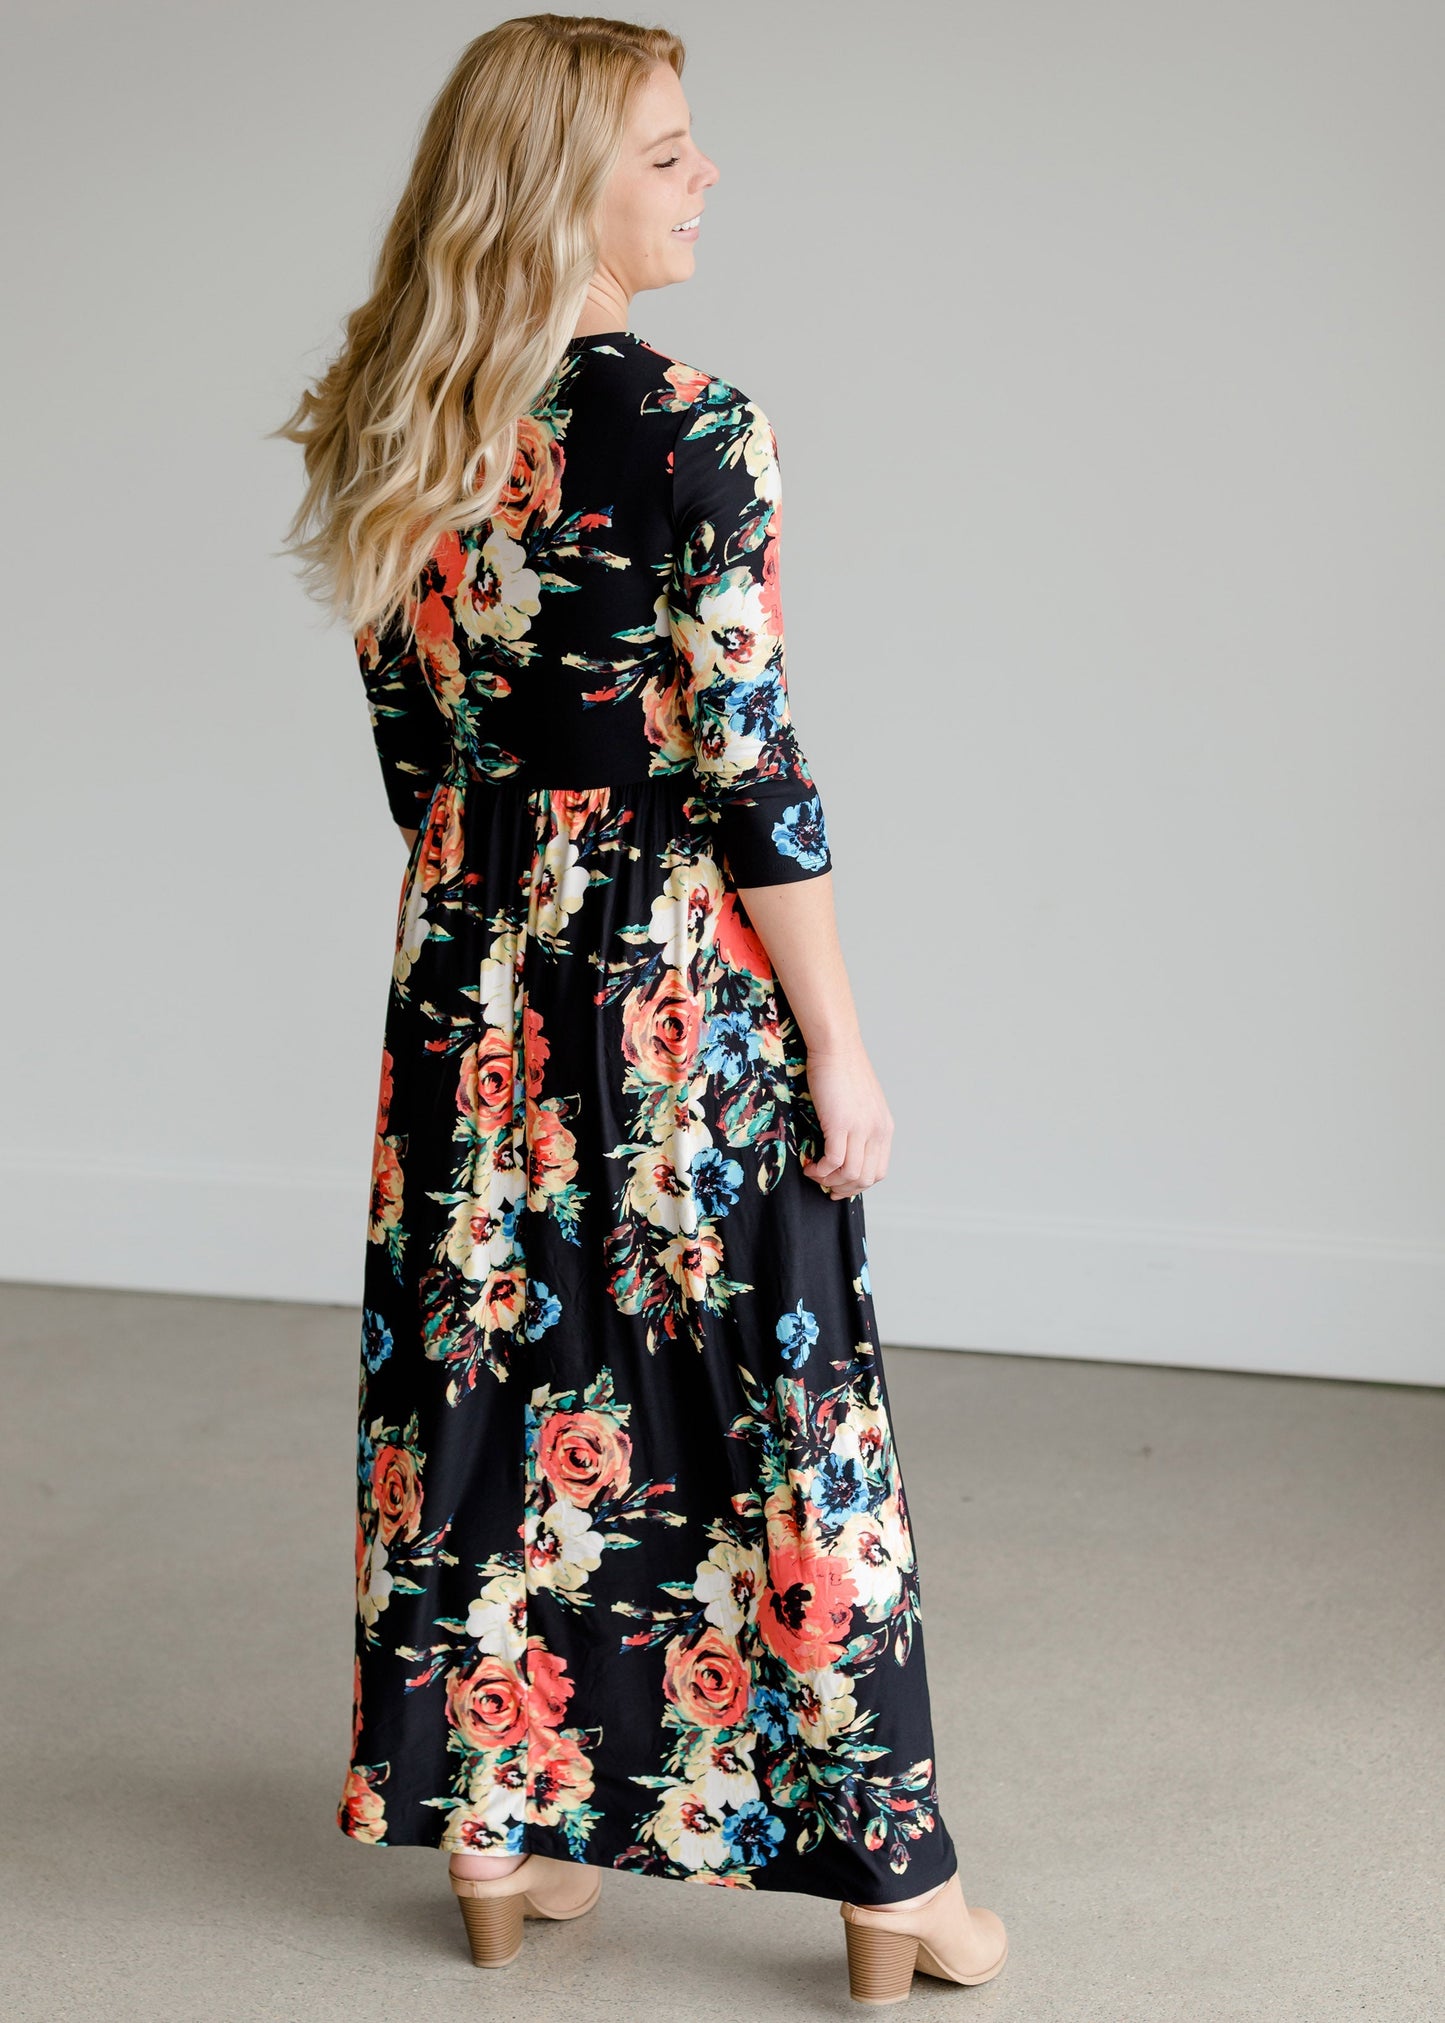 Self Tie Floral Maxi Dress - FINAL SALE Dresses